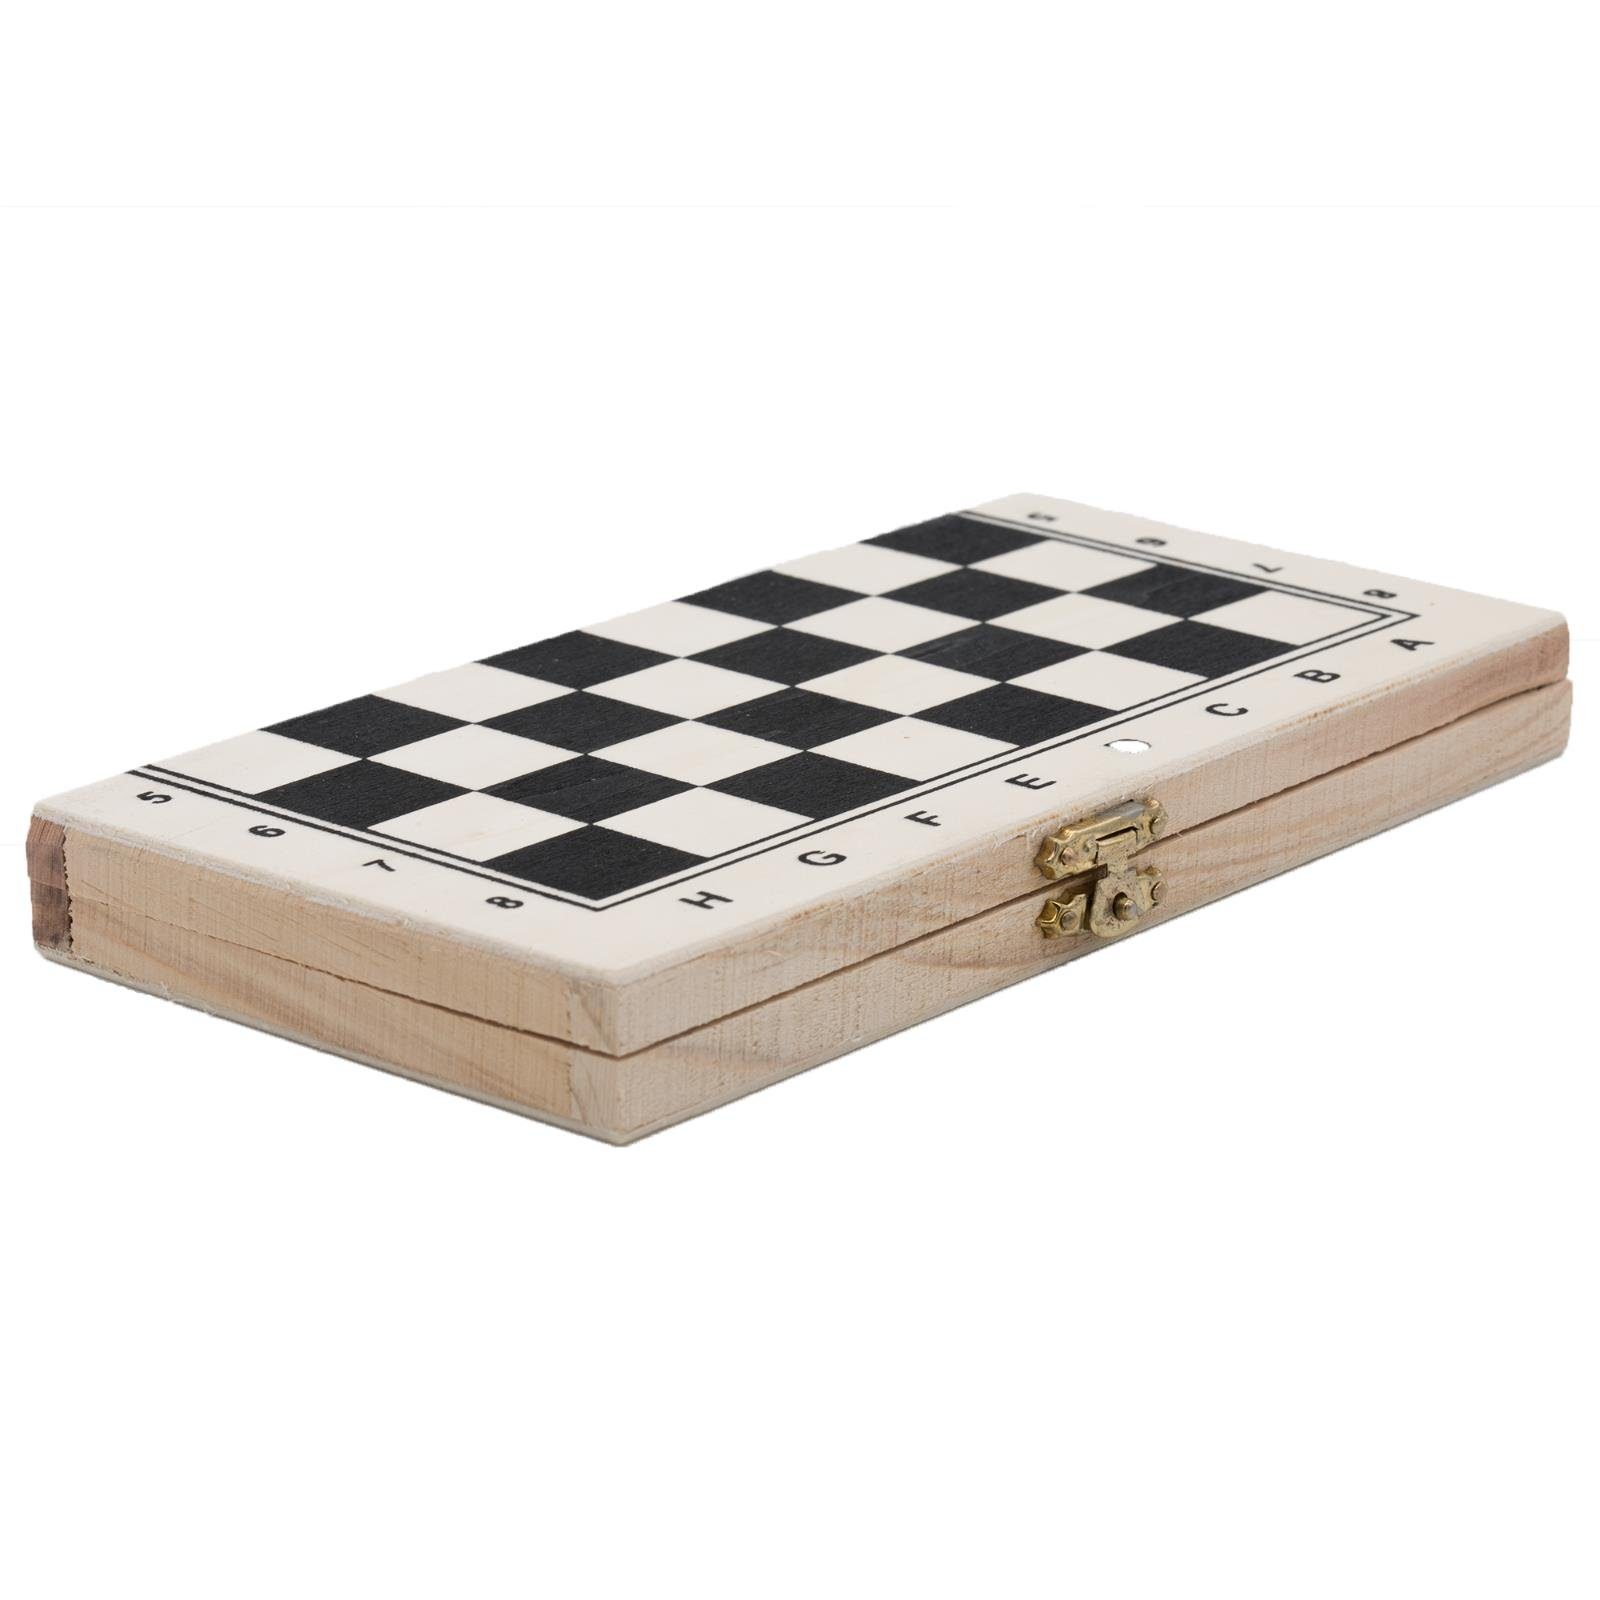 Schachspiel in Klappbox aus hochwertigem Holz im Maritim Stil 